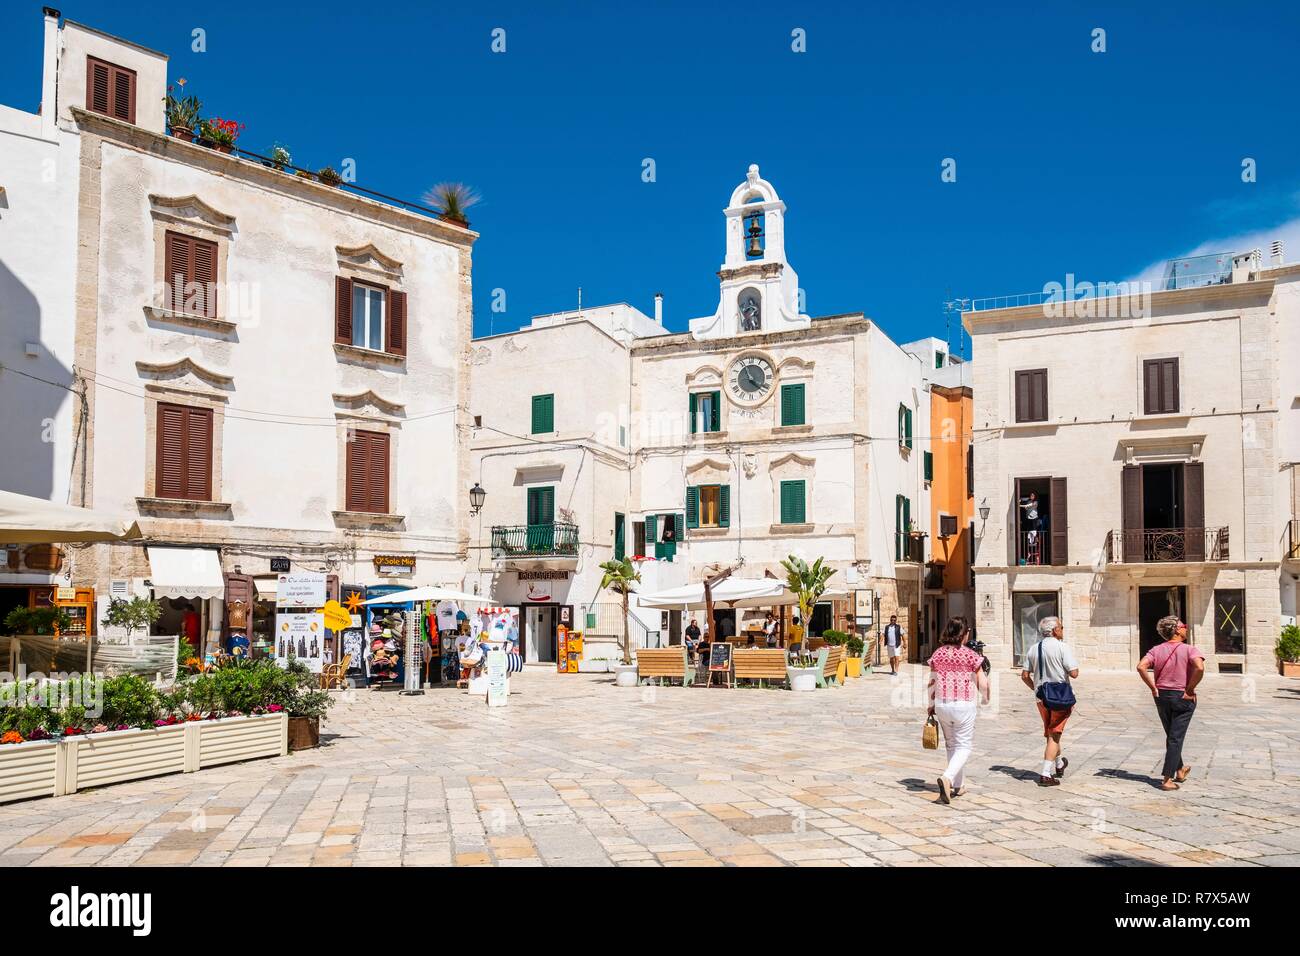 Italia, Apulia, Polignano a Mare, el centro histórico de la ciudad se alza sobre un acantilado de piedra caliza con vistas al Mar Adriático, en la plaza Vittorio Emanuele II y la torre del reloj Foto de stock